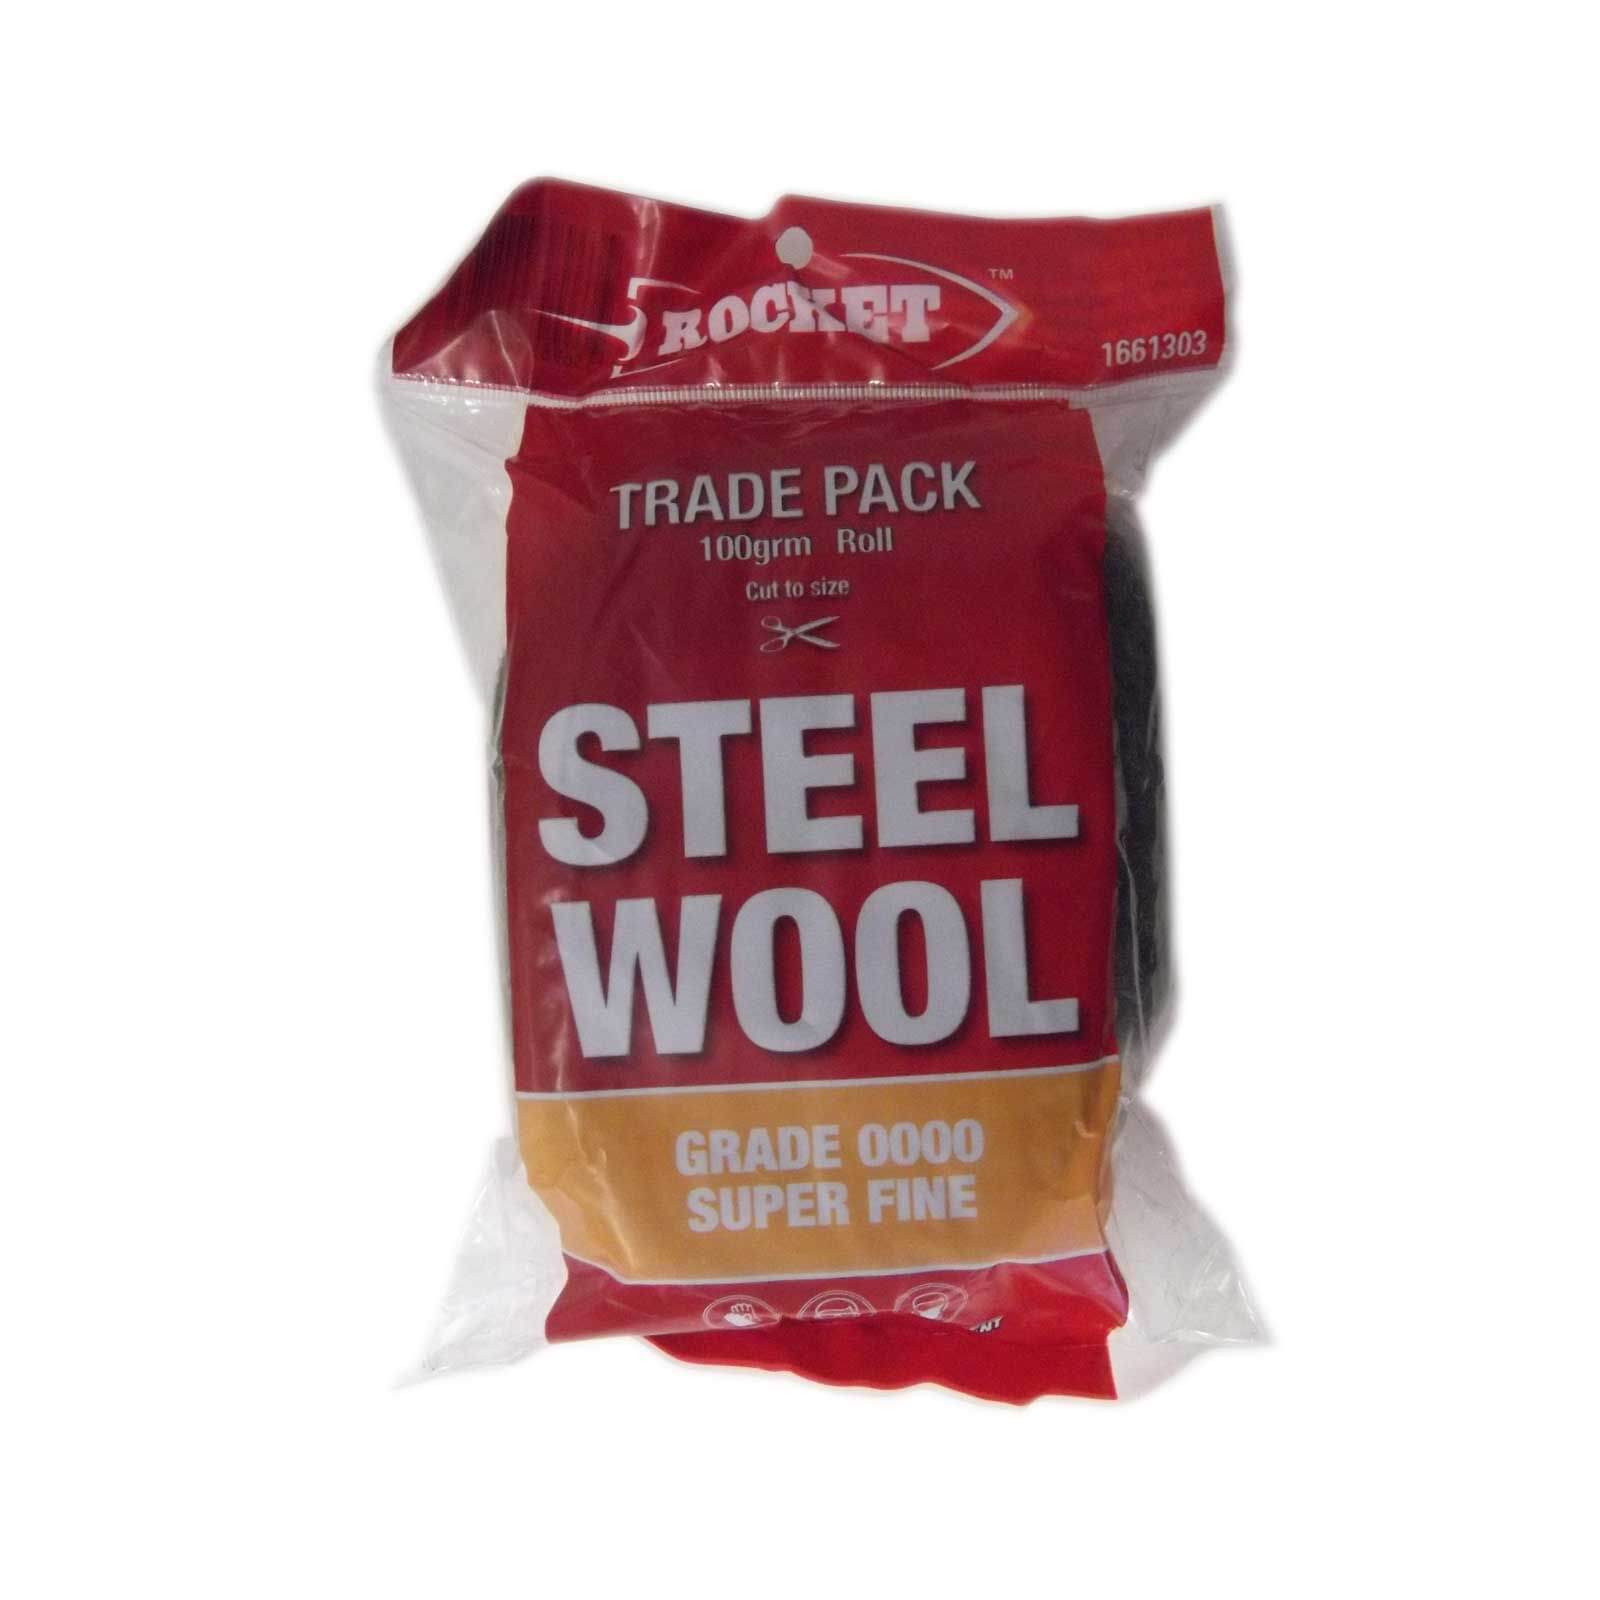 Photo of Rocket Steel Wool - 100g Grade 0000 Super Fine